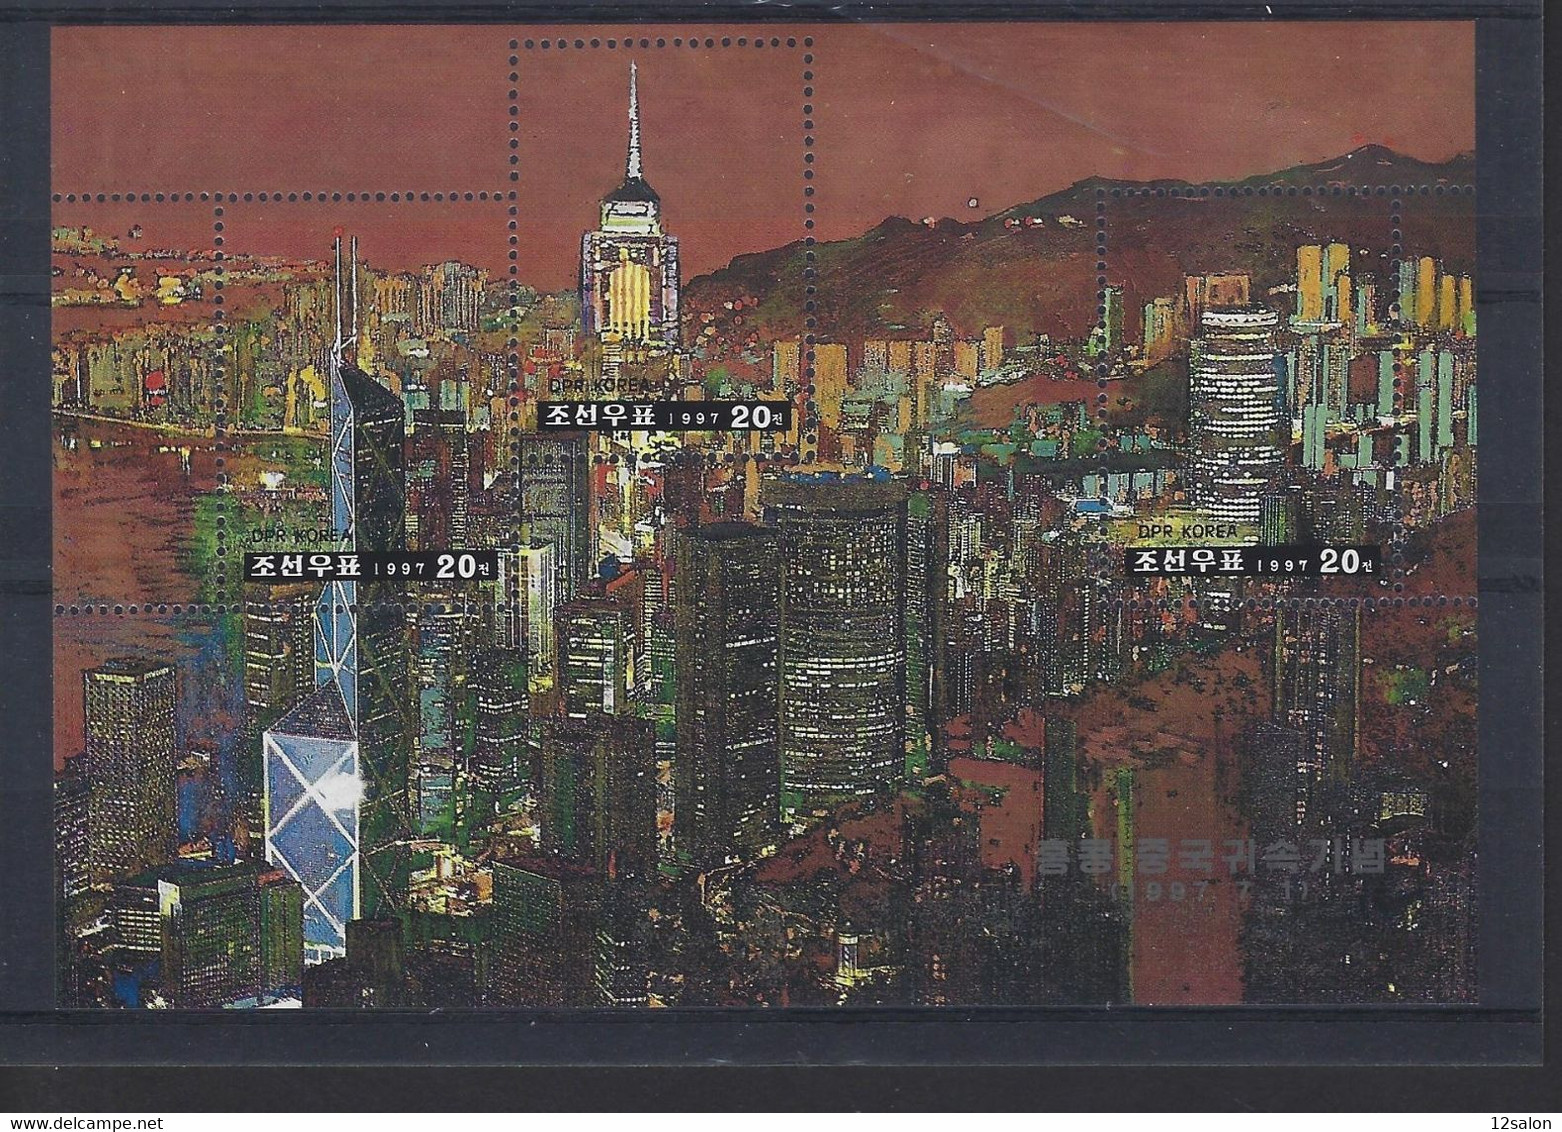 KOREE BLOC 1997 - Korea, South